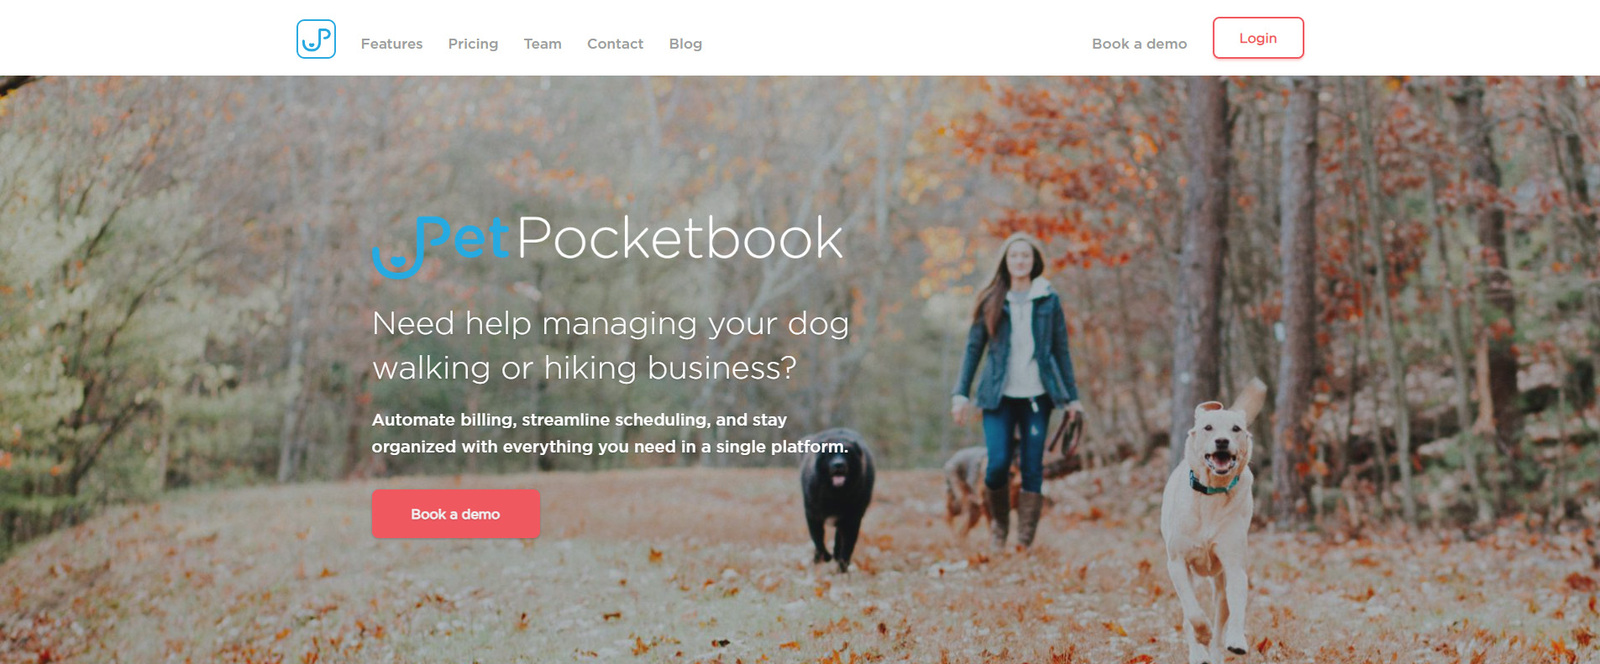 Visualizzazione di PetPocketbook, una delle migliori opzioni software per la cura degli animali domestici per chi porta a spasso gli animali.